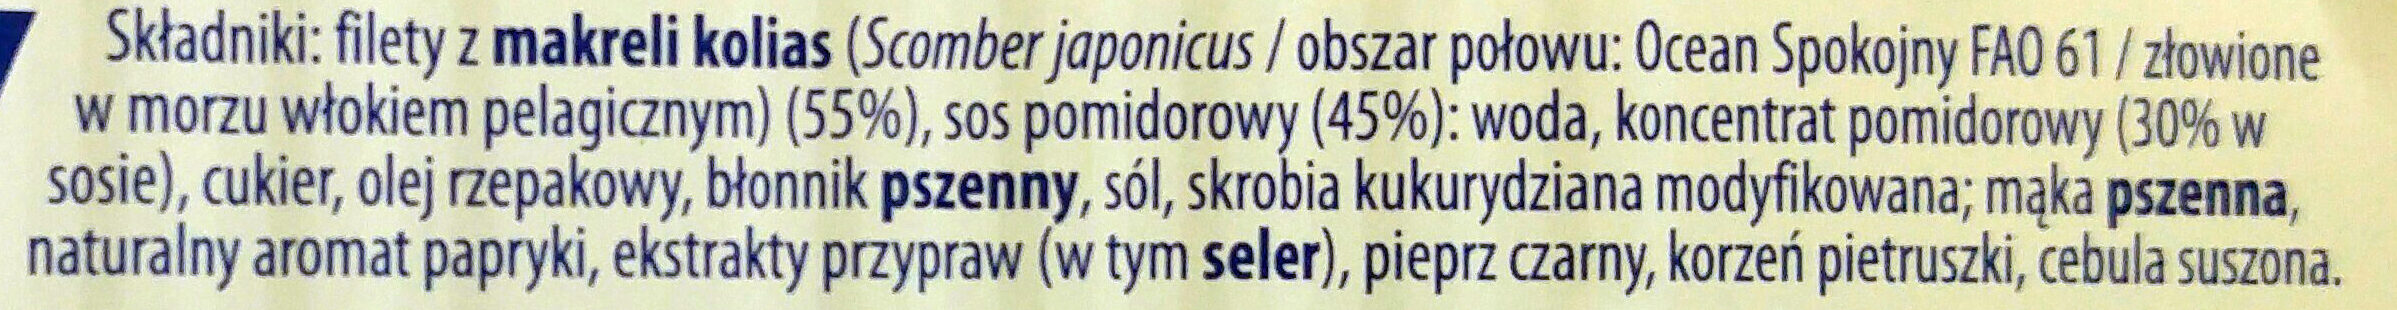 Filety z makreli w sosie pomidorowym. - Ingrédients - pl